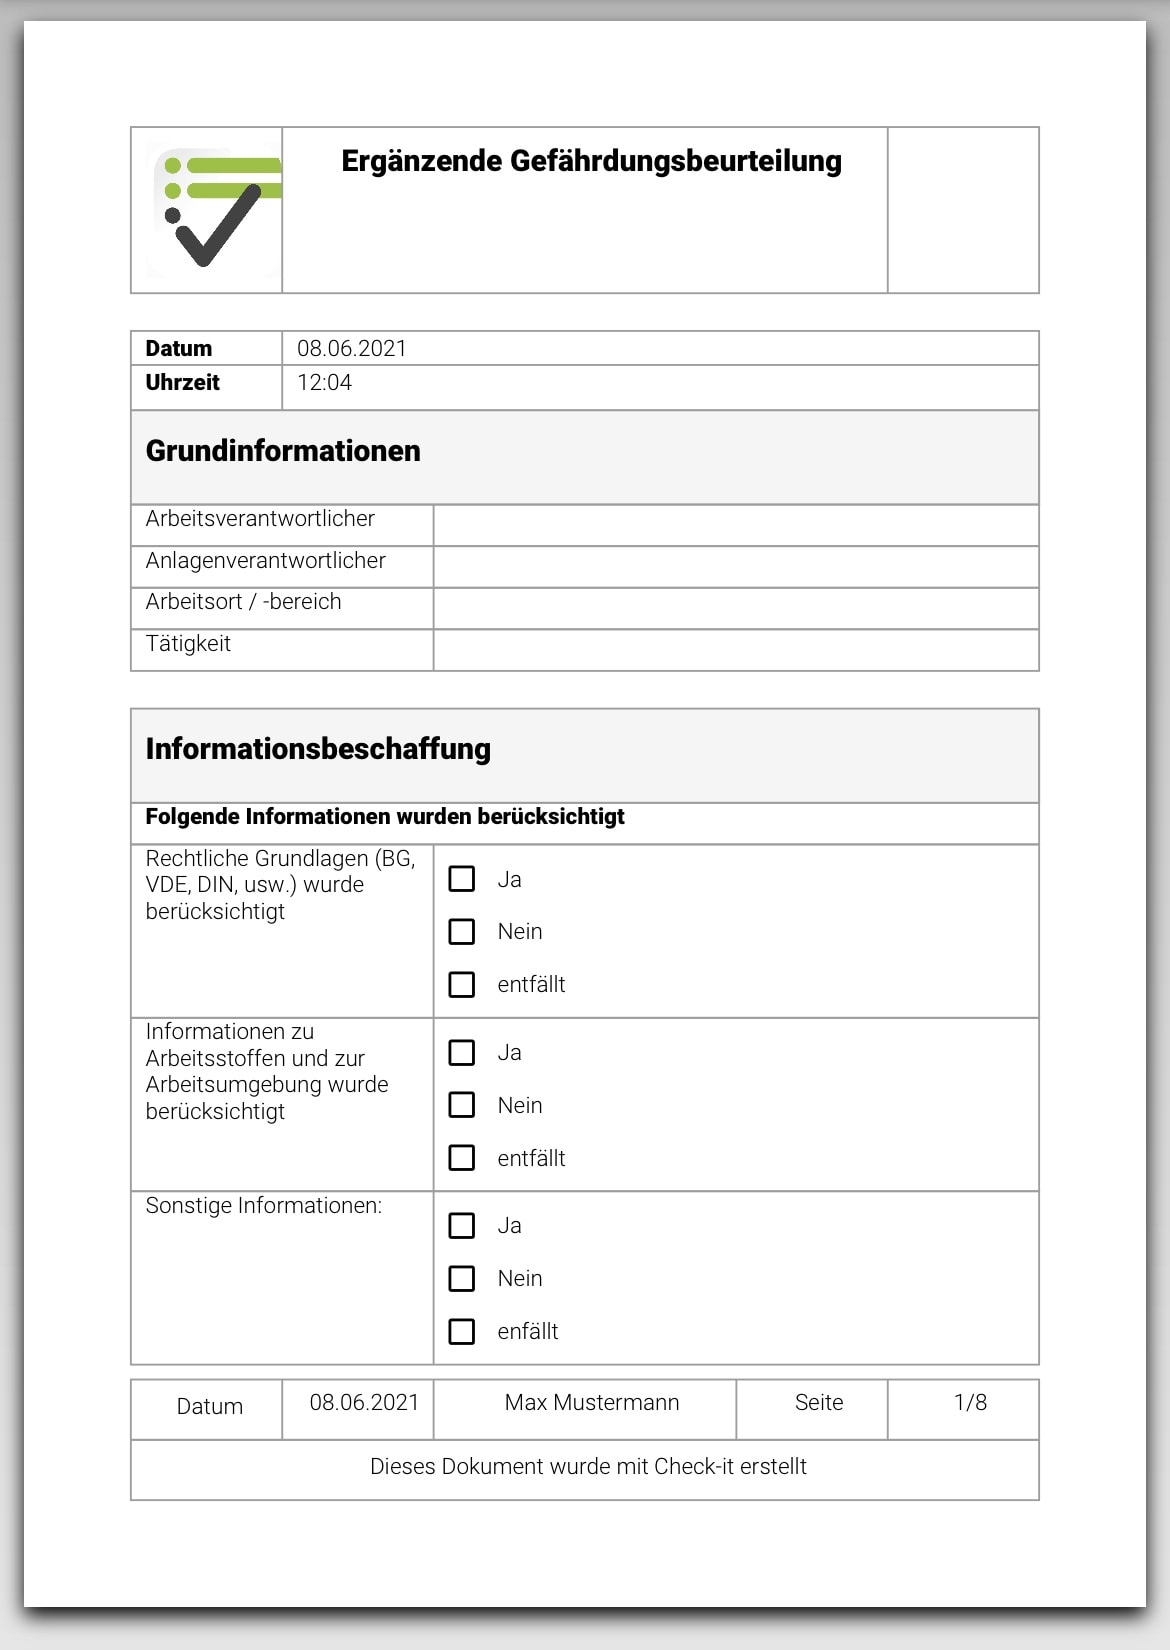 Das Bild zeigt das PDF Dokument, welches ausgegeben wird, wenn eine Gefährdungsbeurteilung mittels Check-it App ausgefüllt wird.